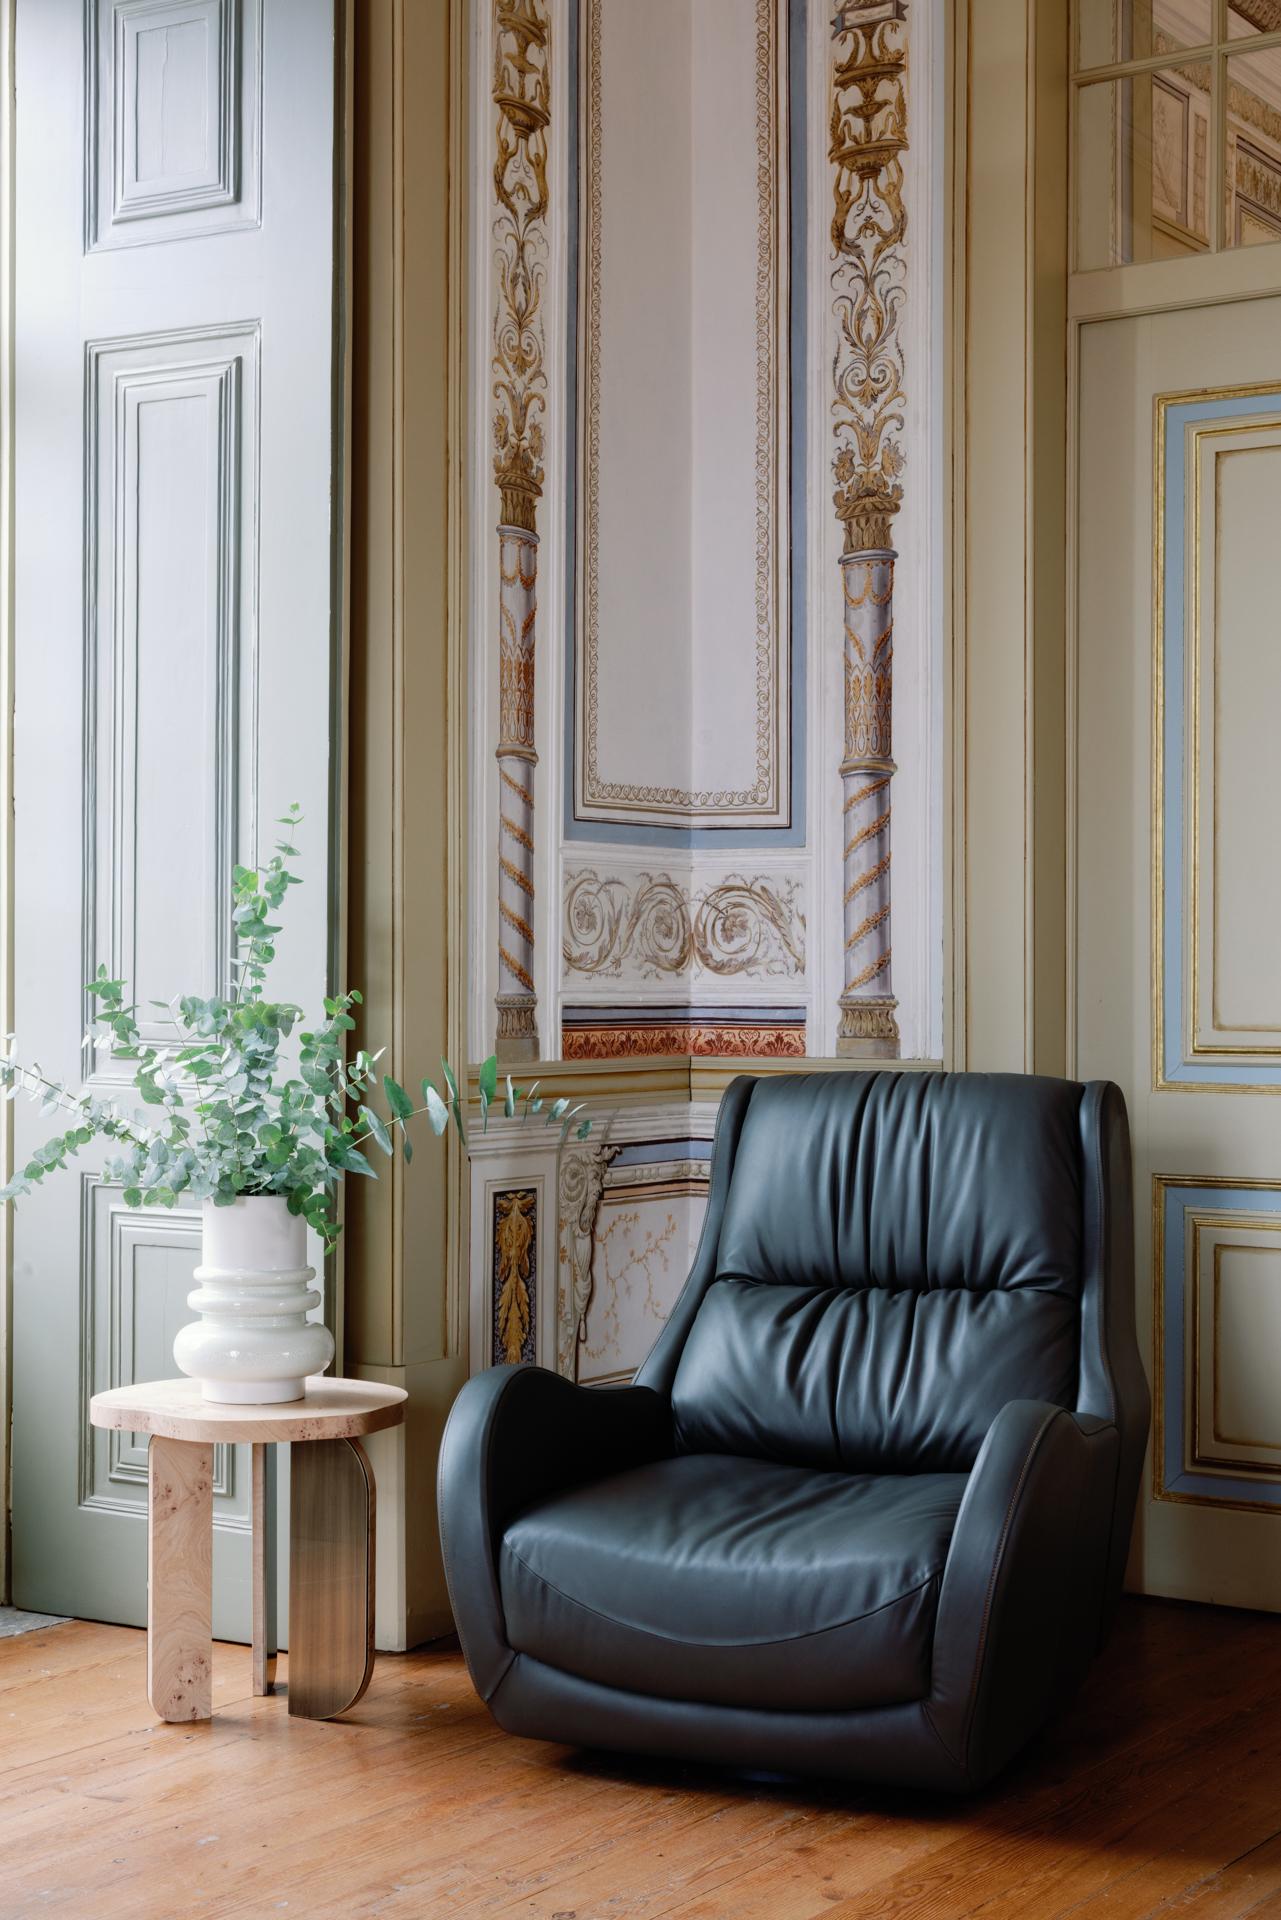 Capelinhos Swivel Lounge Chair, Contemporary Collection, Handcrafted in Portugal - Europe by Greenapple.

La chaise longue en cuir Capelinhos témoigne d'un confort intemporel. Comme un bon vin, Capelinhos vieillit gracieusement grâce à son